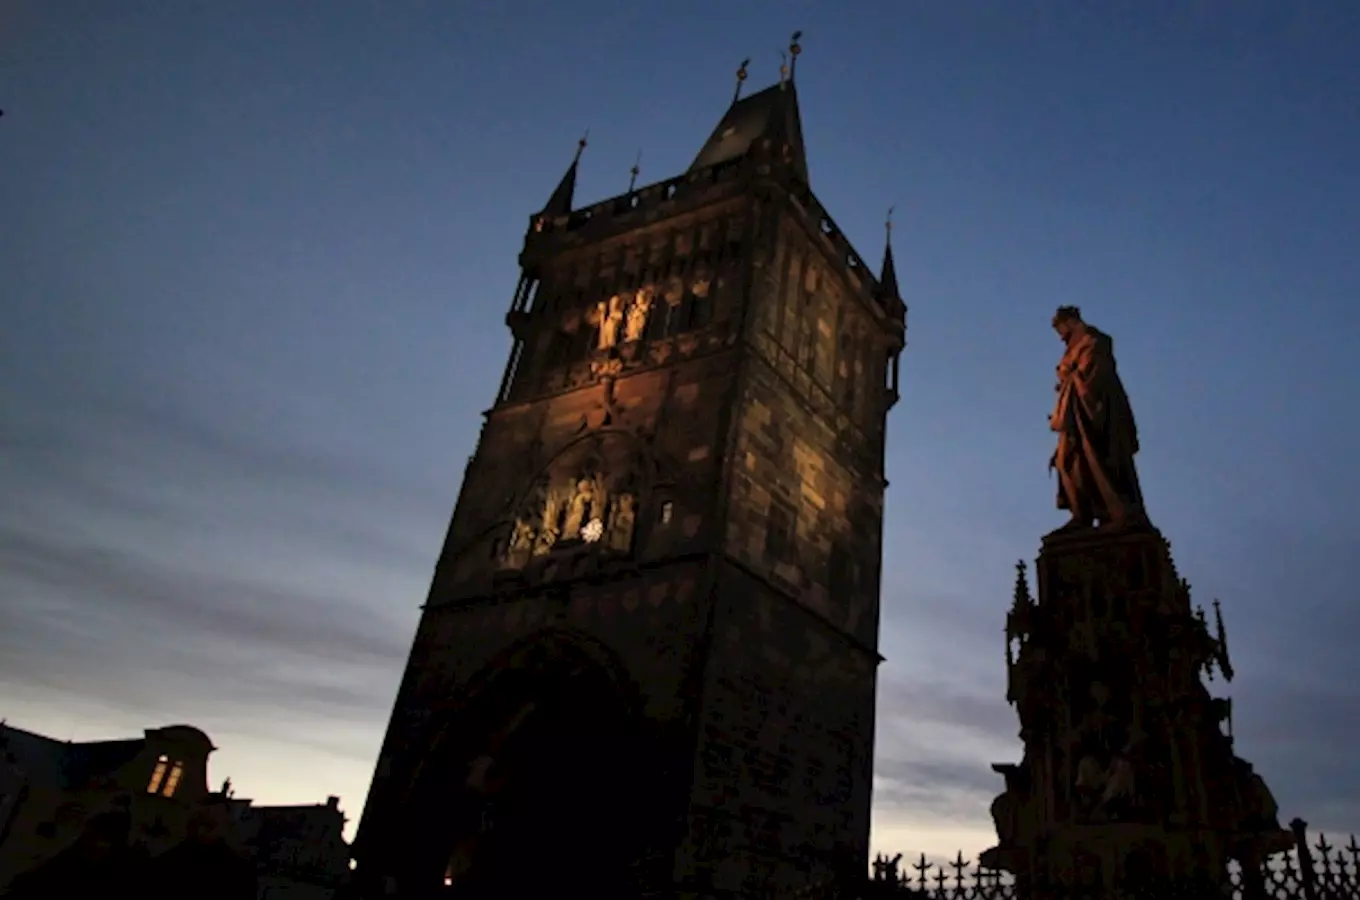 Mystérium věže - nová expozice k výročí Karla IV. ve Staroměstské mostecké věži 